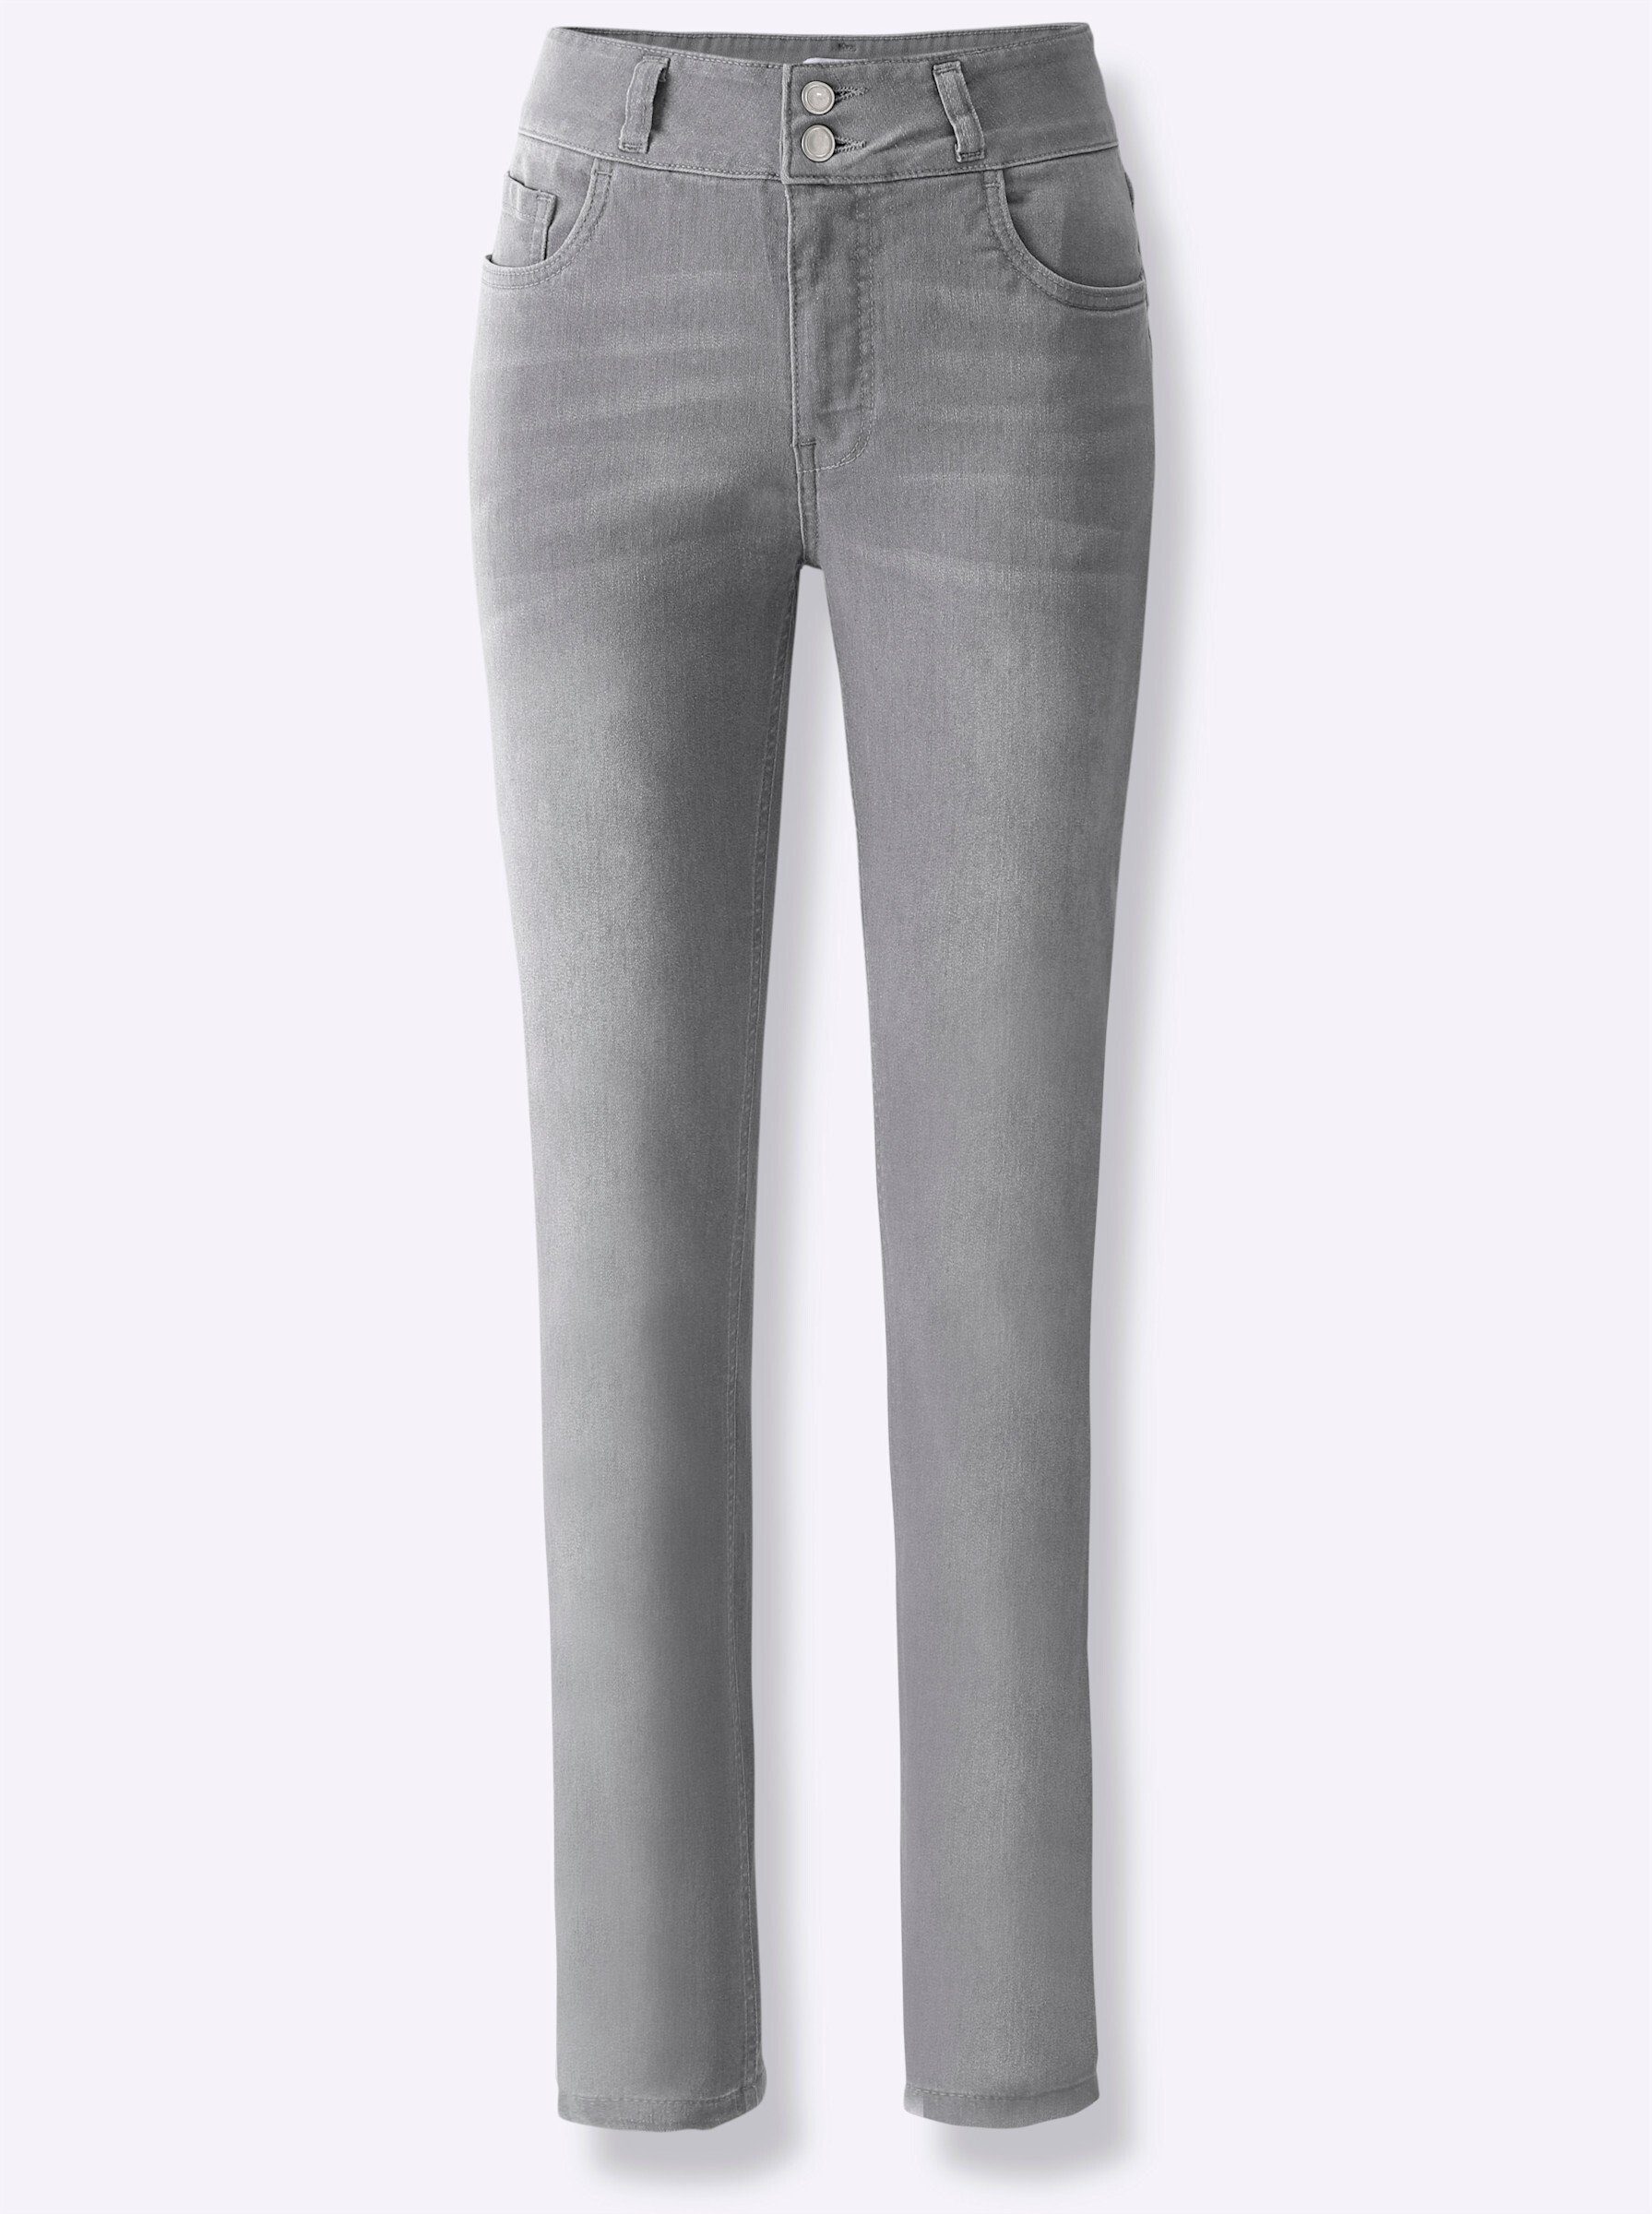 light WEIDEN Jeans Bequeme WITT grey-denim